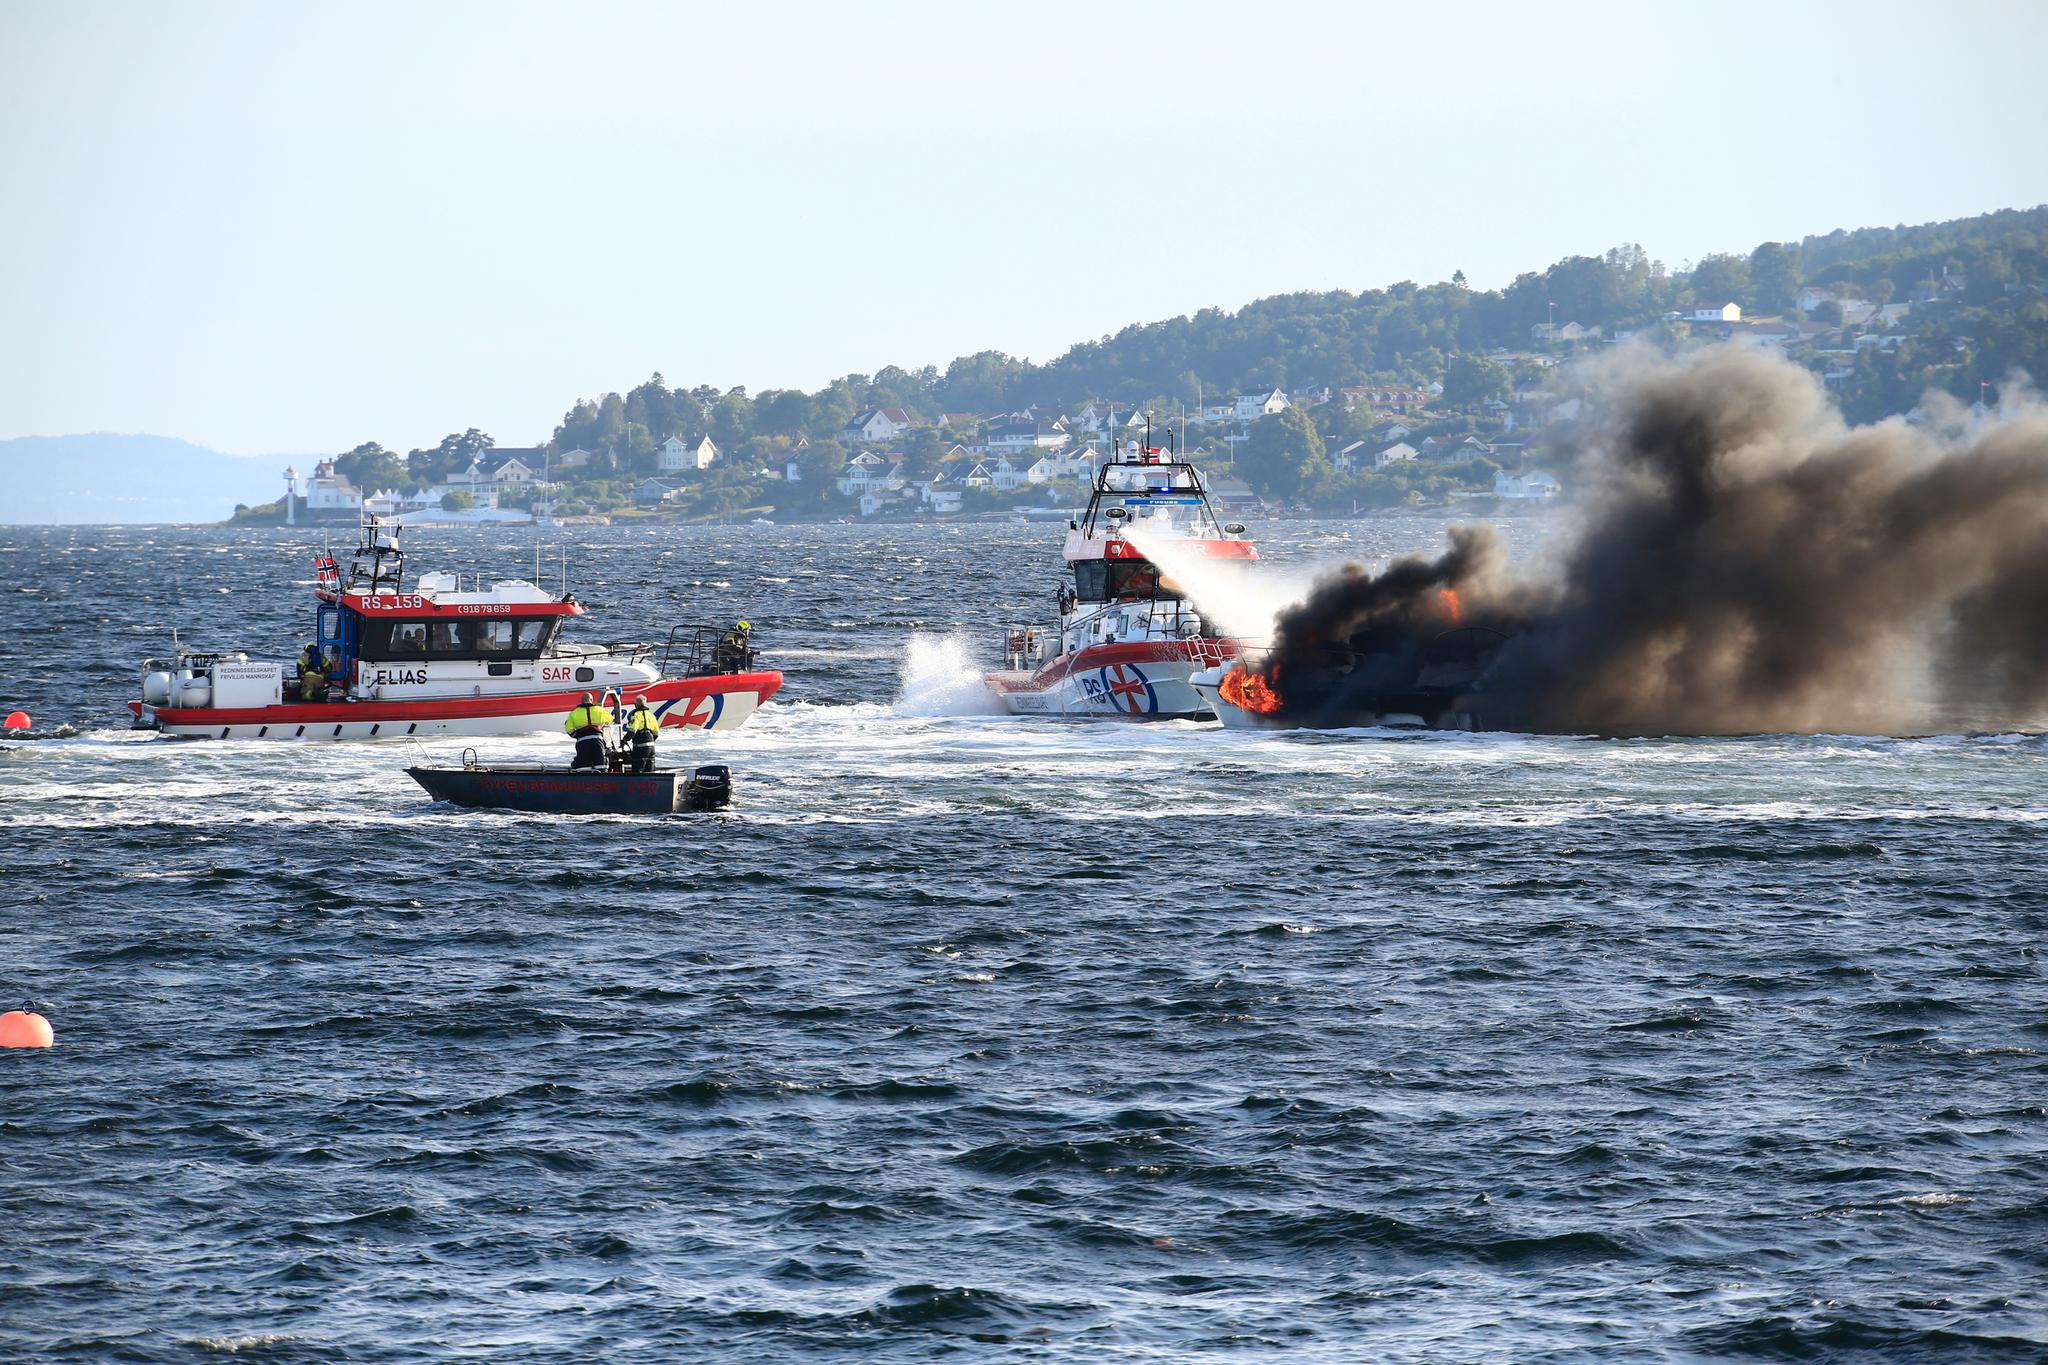 Flere redningsbåter jobbet for å få opp den savnede personen fra vannet og for å slukke brannen.